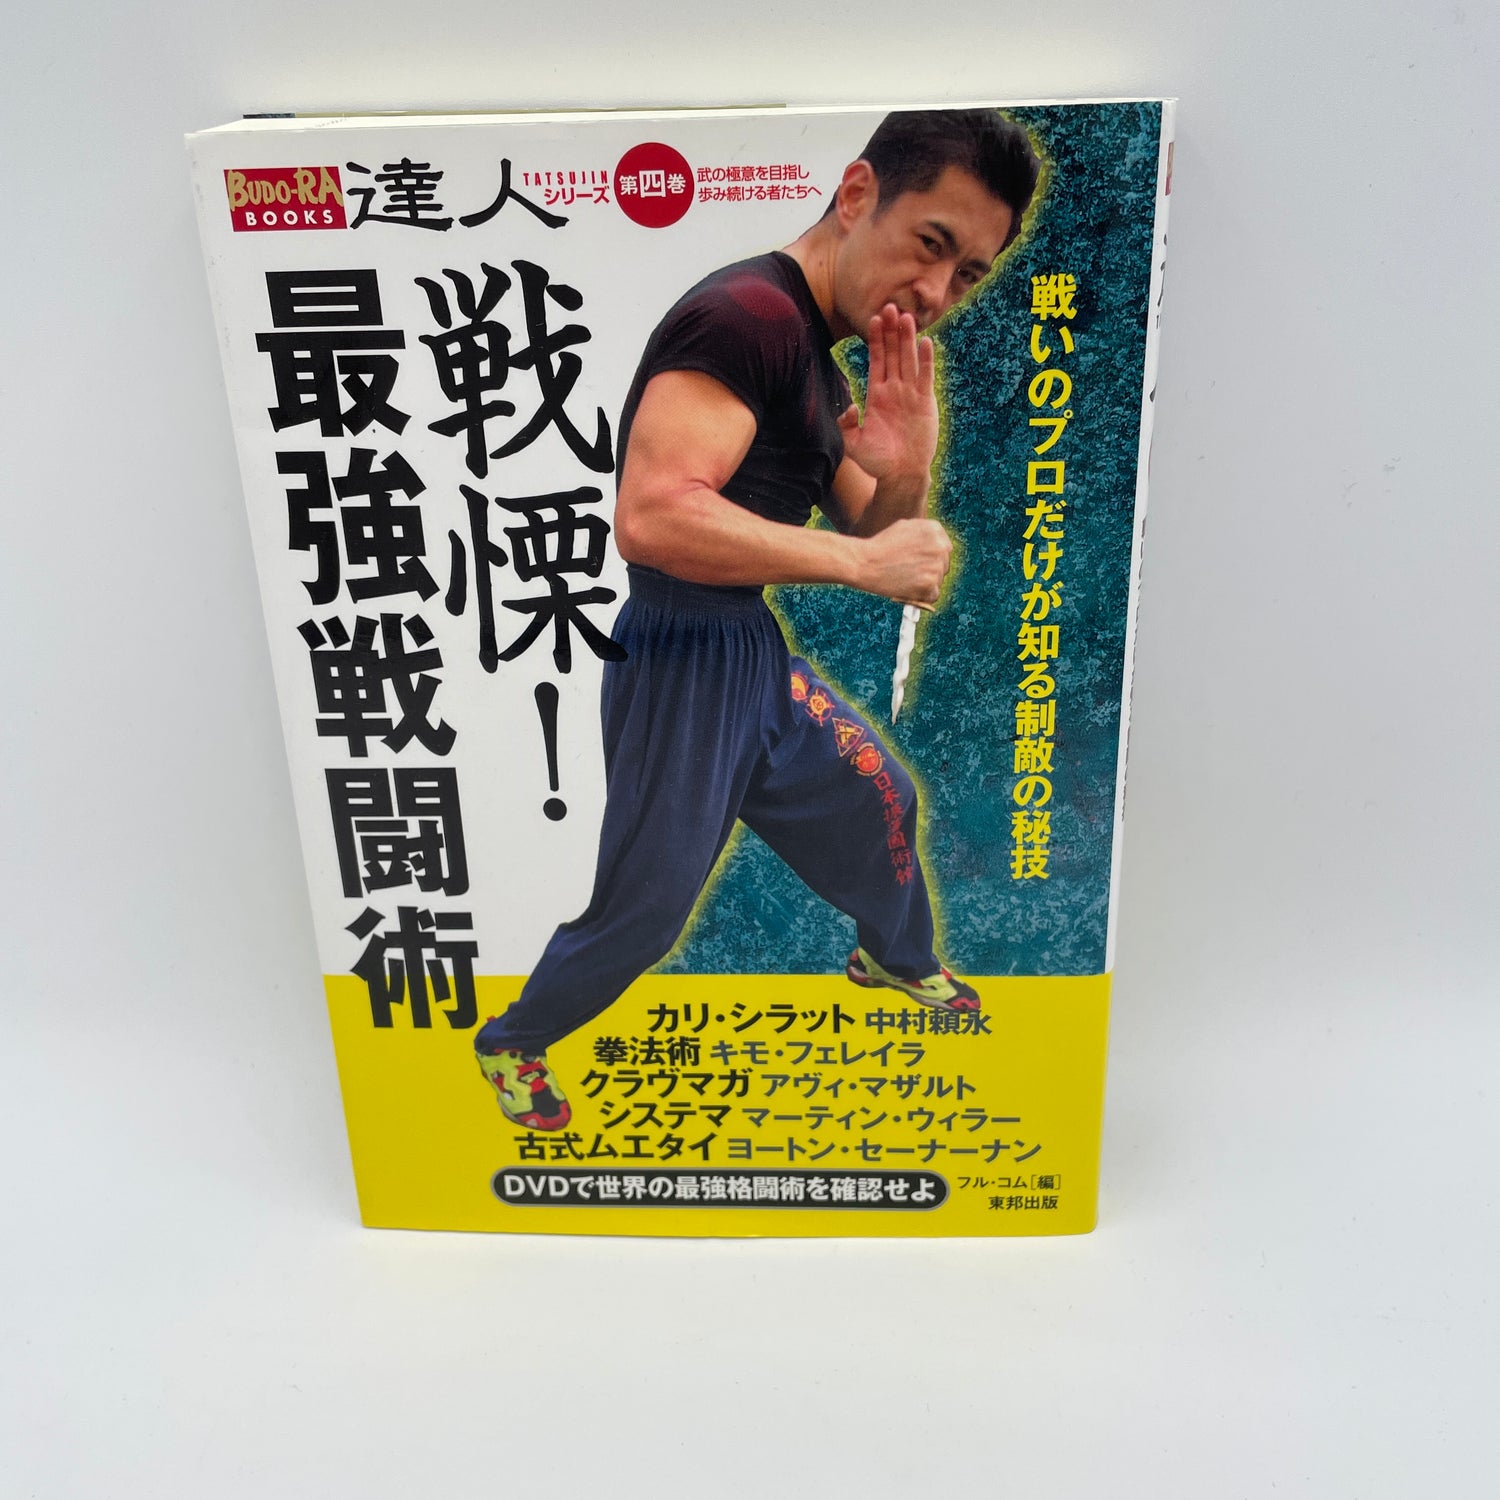 Tatsujin Vol 4: Libro y DVD de técnicas de combate más fuertes (usado)